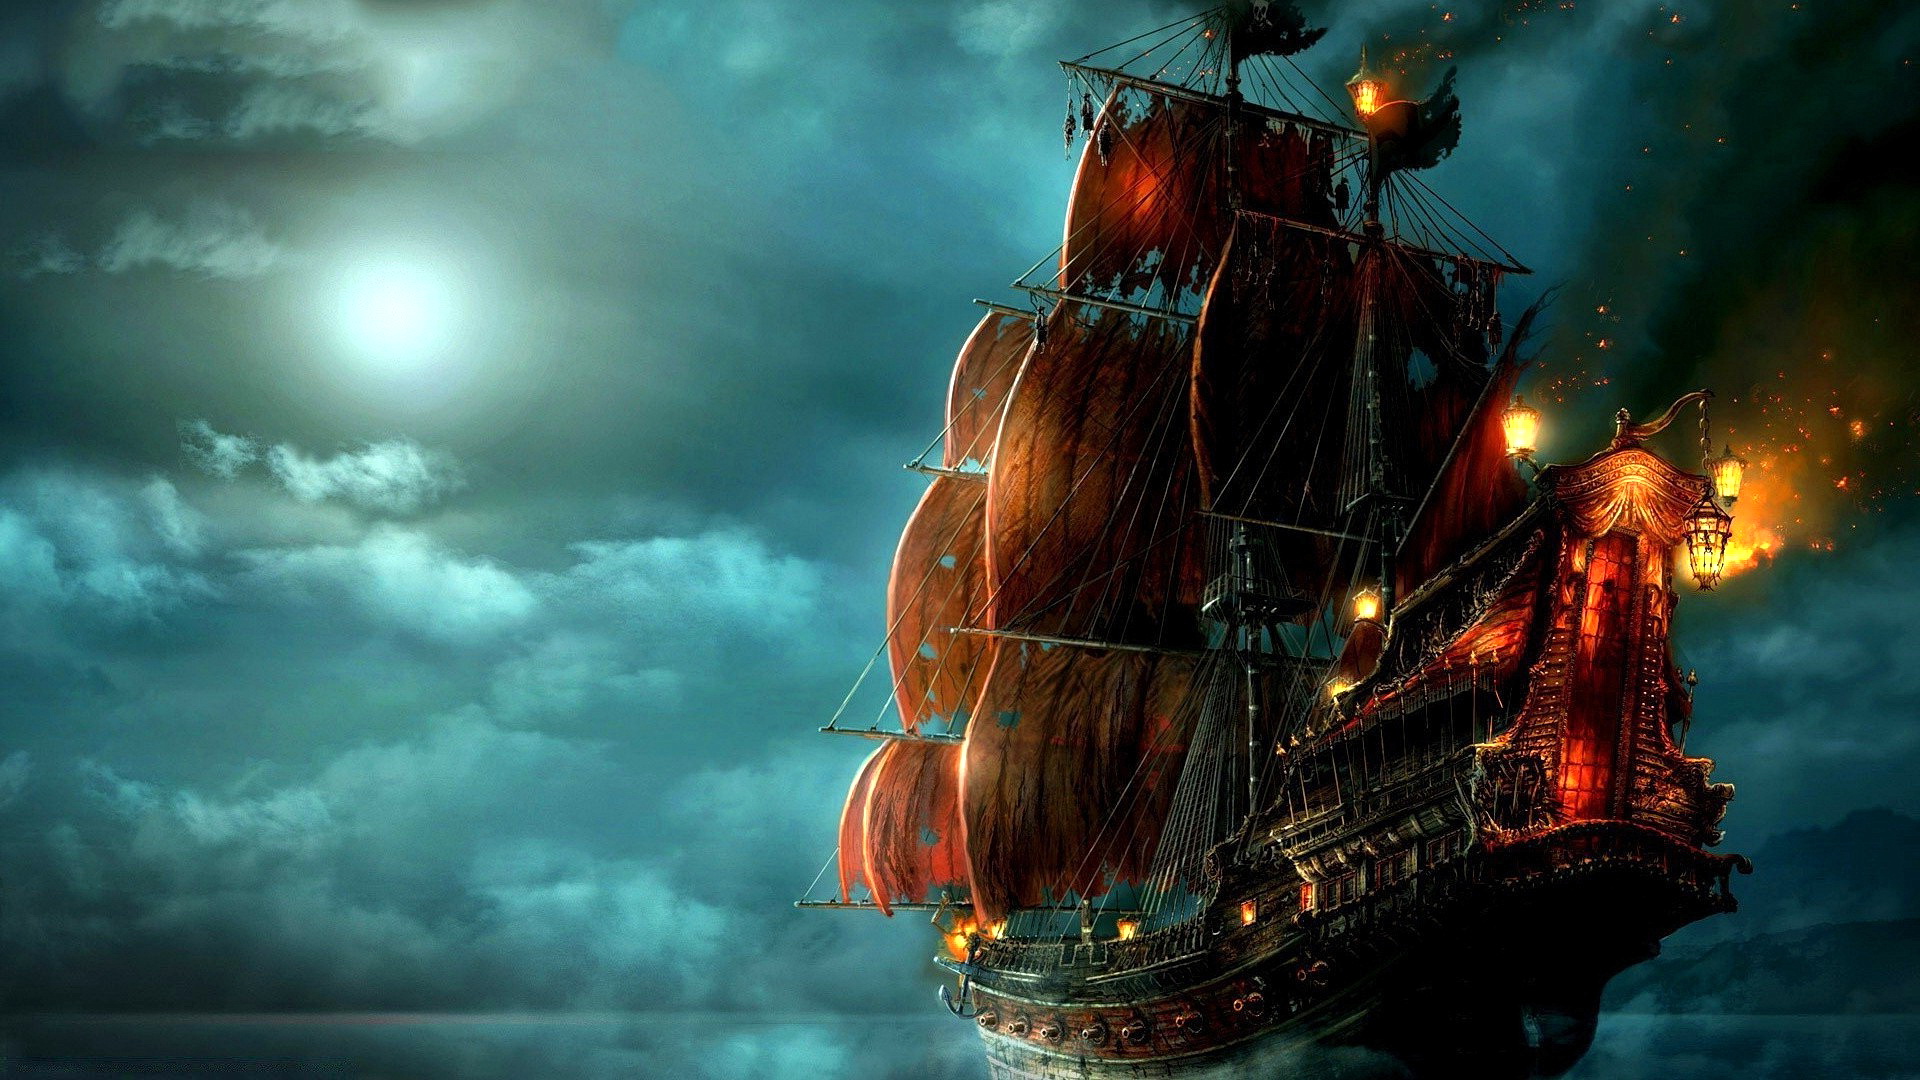 Бесплатное фото Пиратский корабль в фоне ночного неба